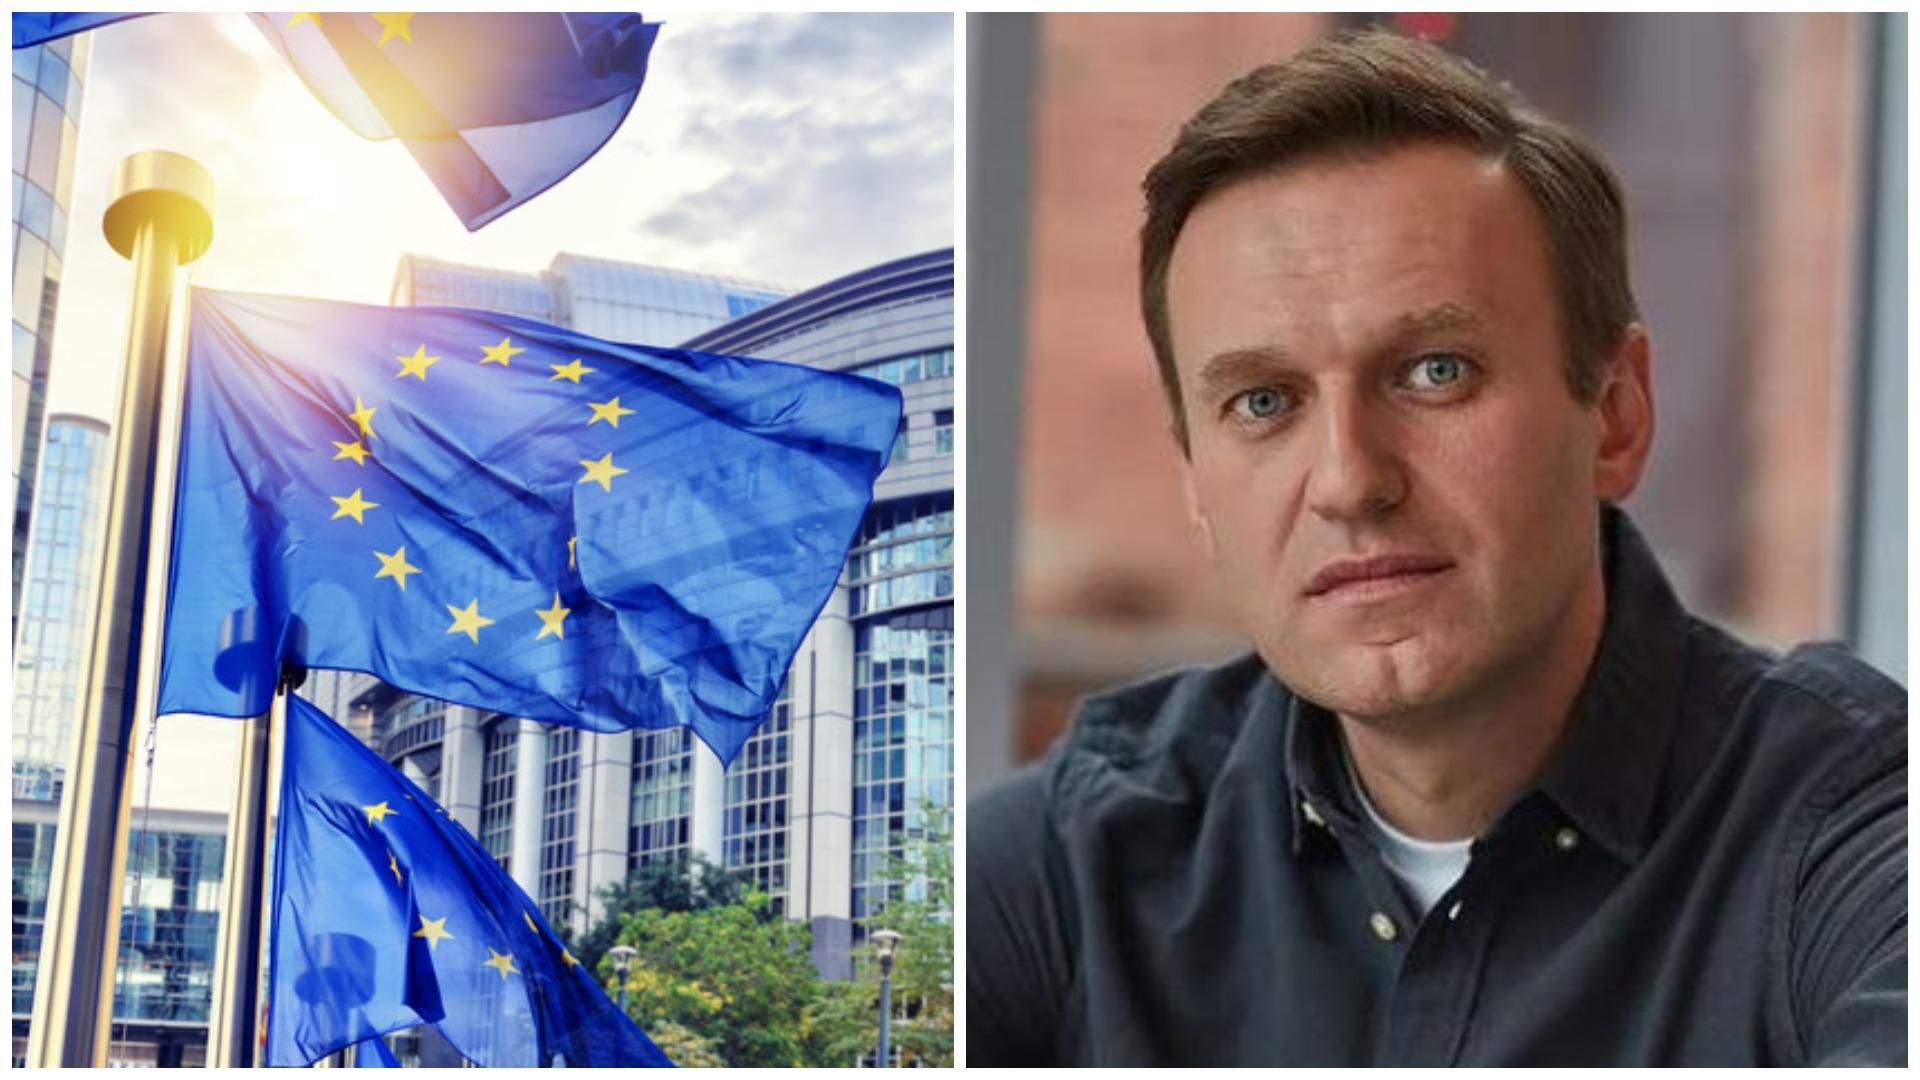 Осудили на основе "произвольных" решений суда: Совет Европы обратился к России из-за Навального